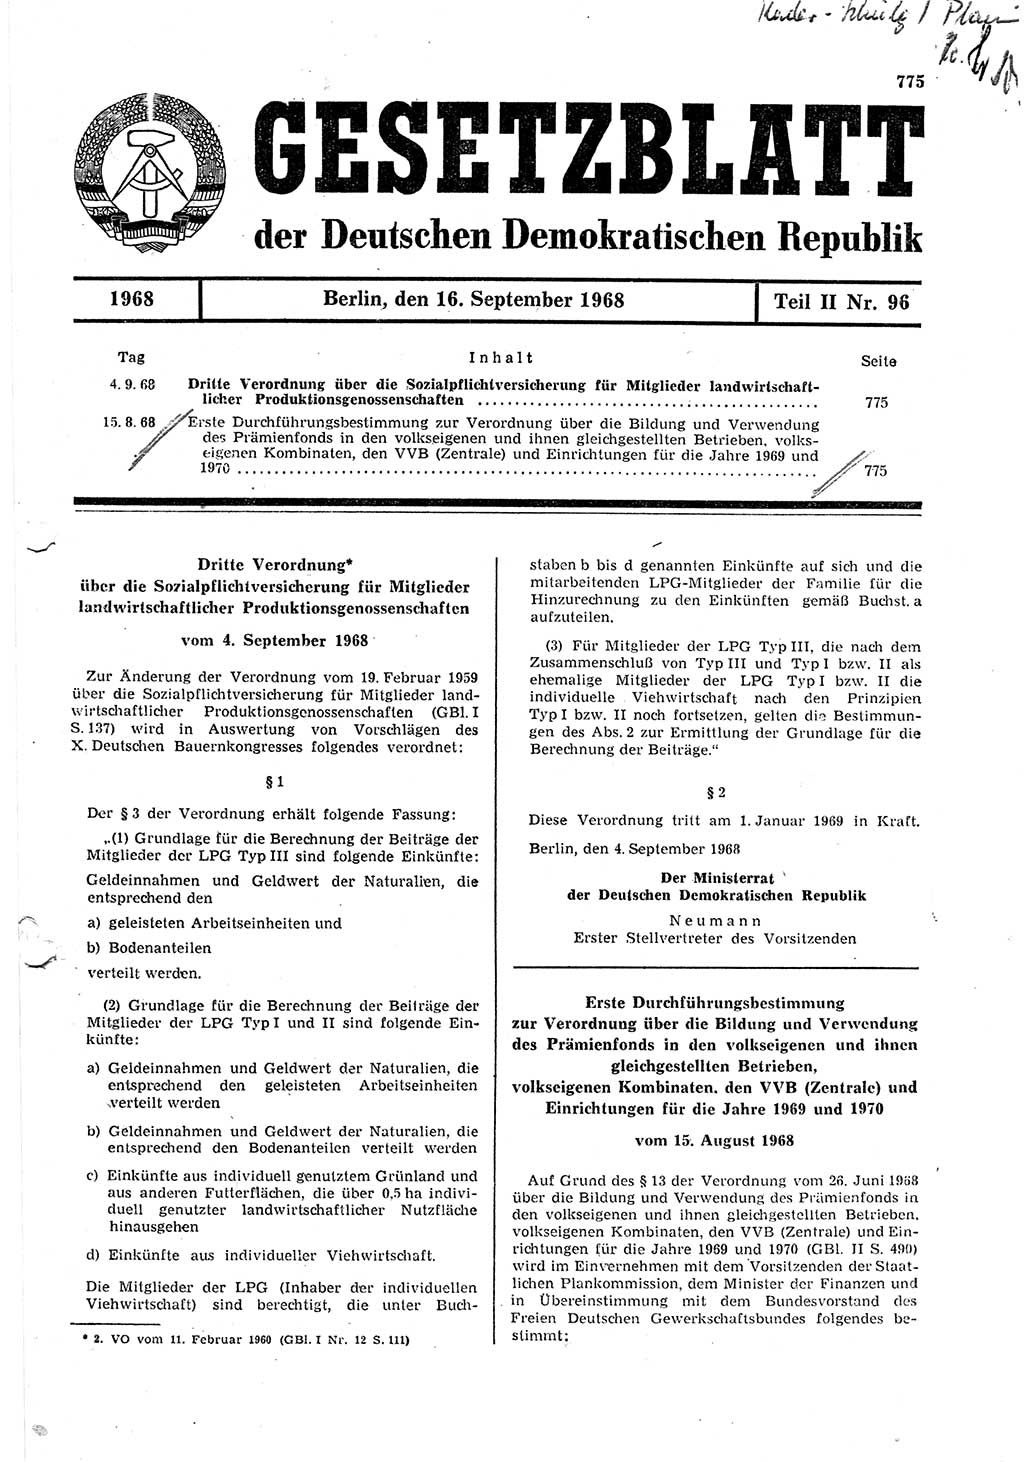 Gesetzblatt (GBl.) der Deutschen Demokratischen Republik (DDR) Teil ⅠⅠ 1968, Seite 775 (GBl. DDR ⅠⅠ 1968, S. 775)